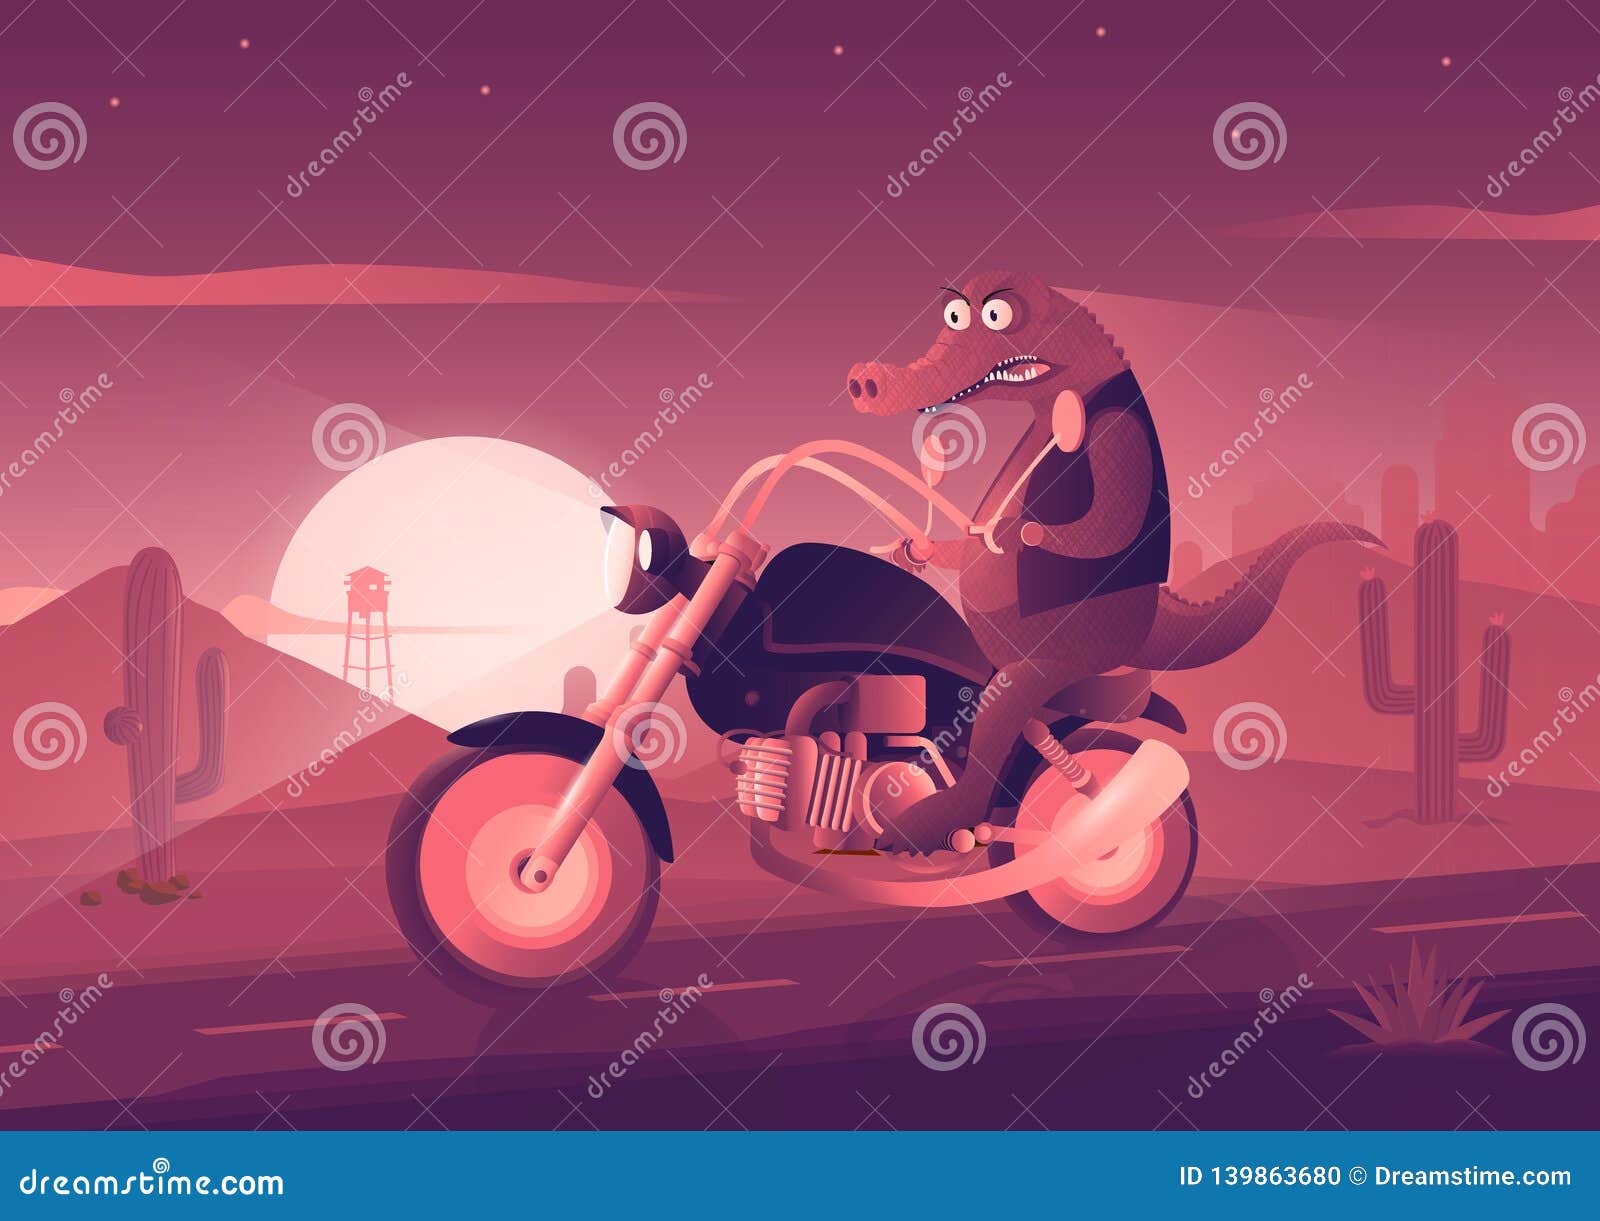 https://thumbs.dreamstime.com/z/crocodile-bike-art-illustration-vector-crocodile-bike-art-illustration-139863680.jpg